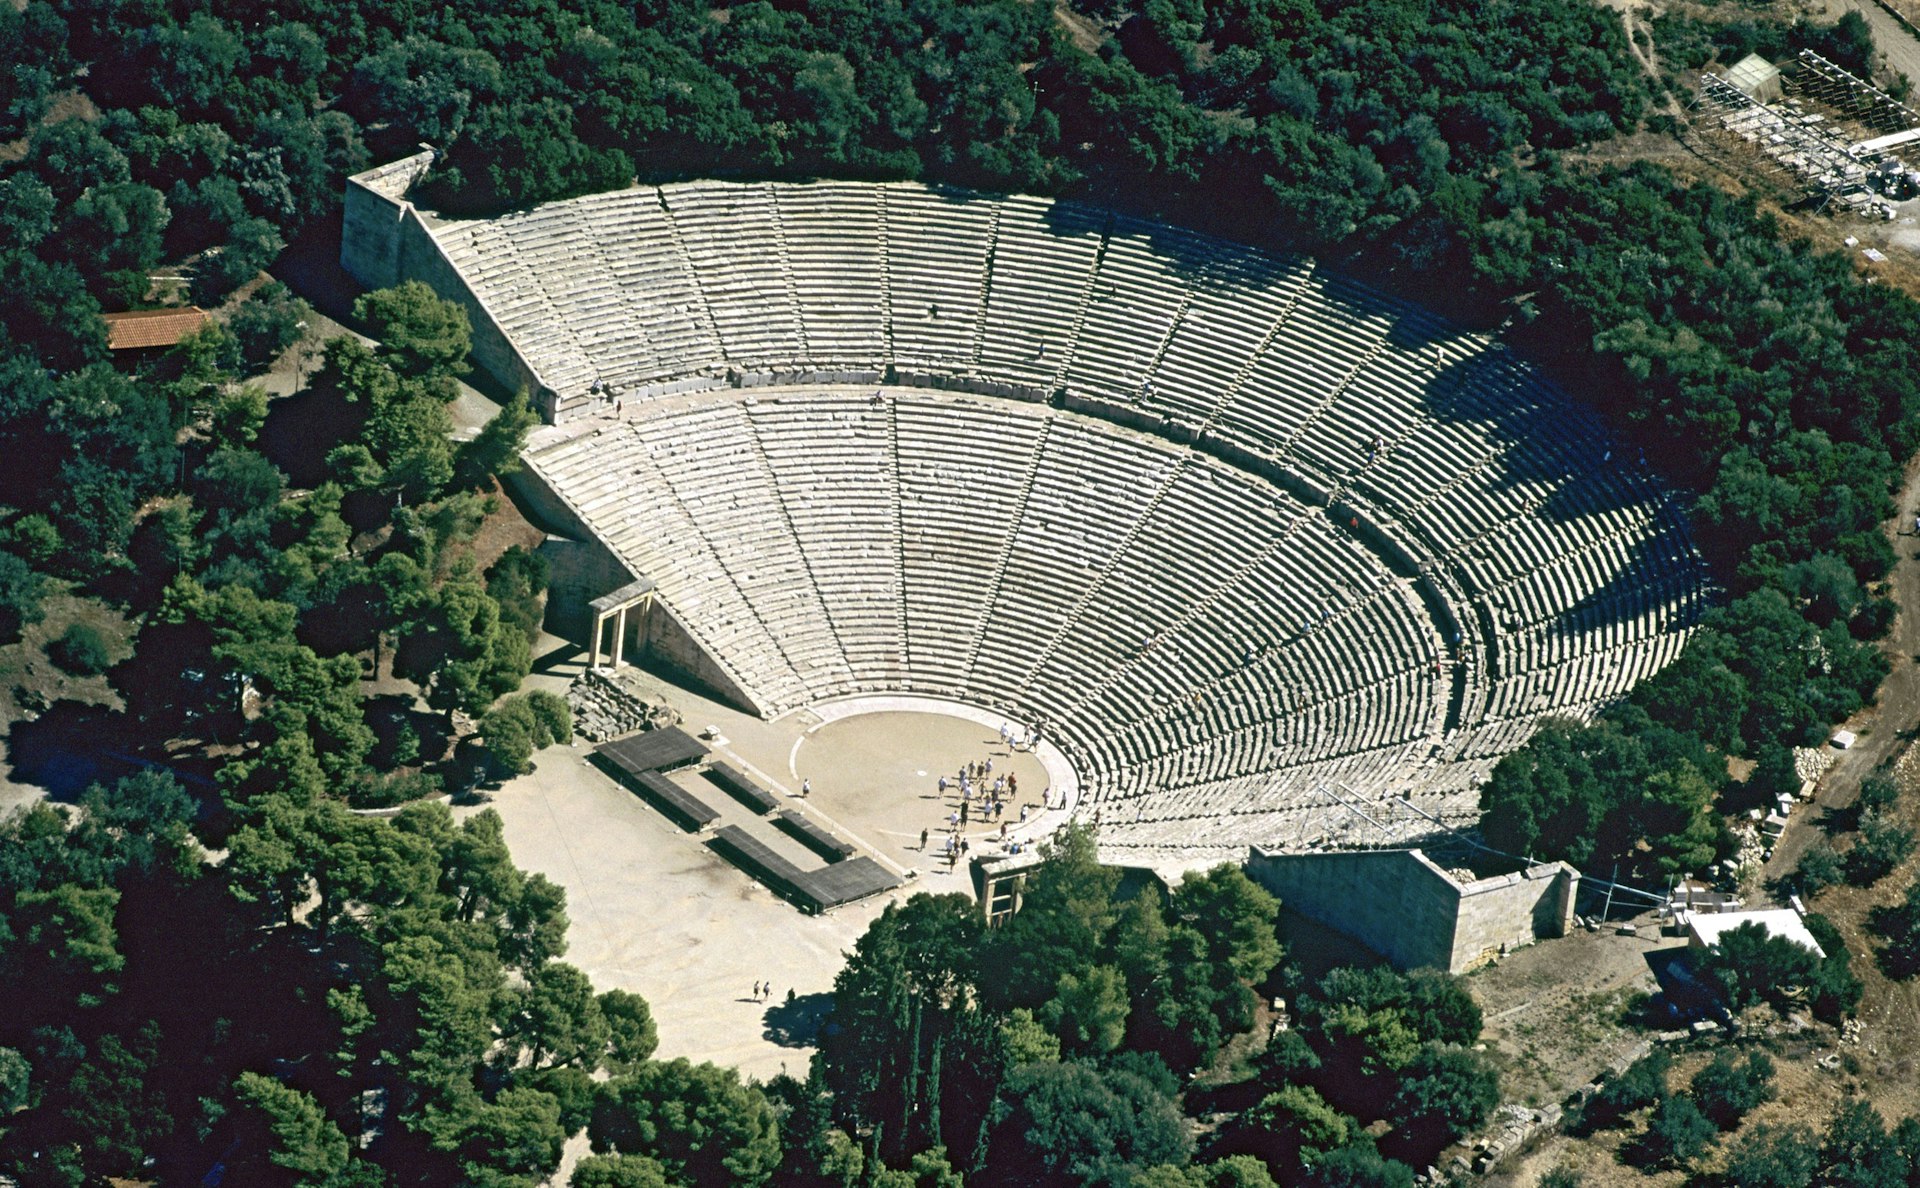 Peloponnese_Epidaurus_1.jpg